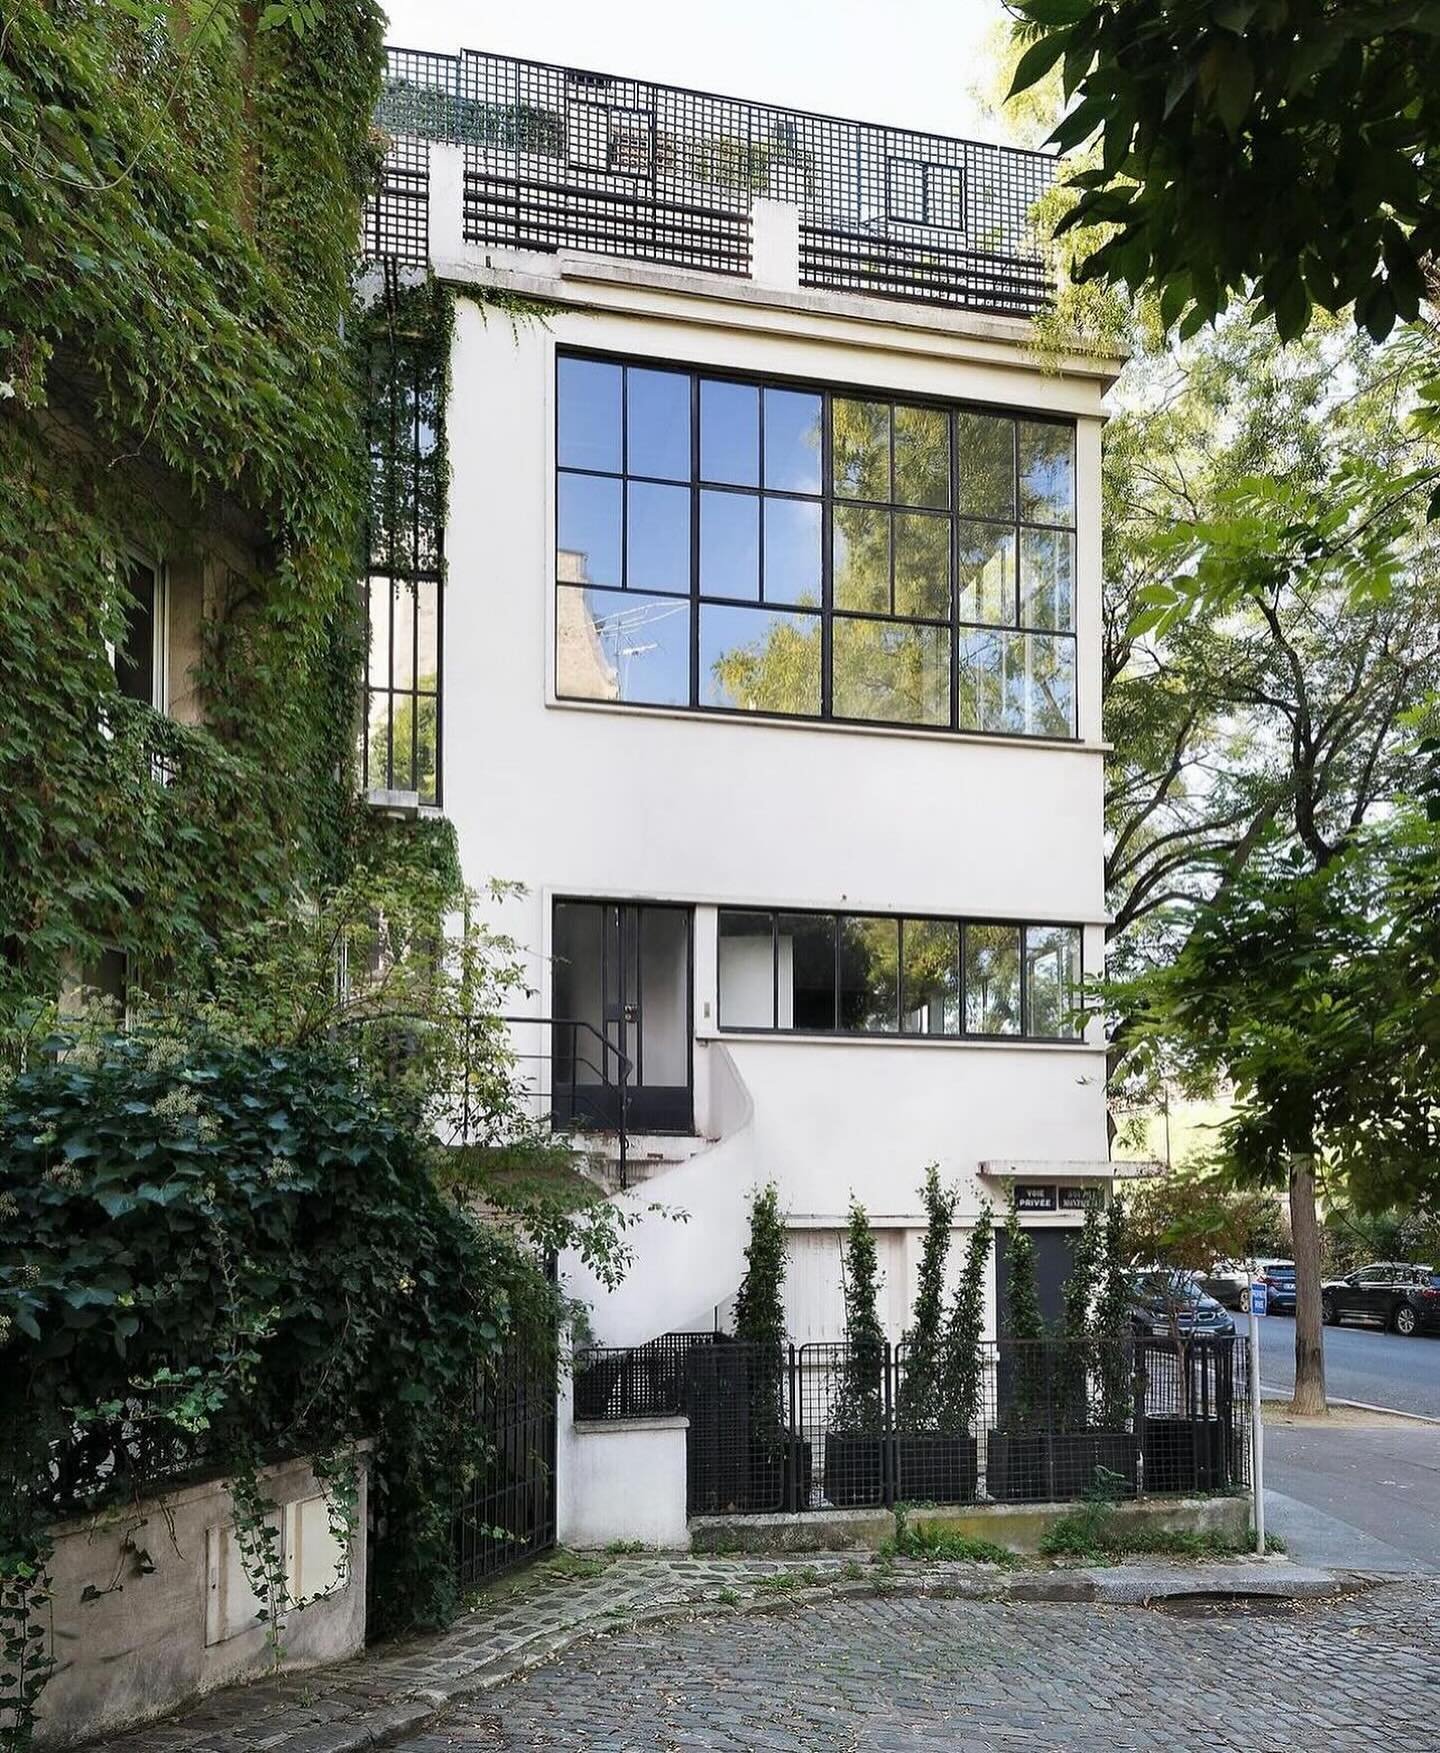 Maison-Atelier Ozenfant (Paris, 1922) Le Corbusier&rsquo;s first Parisian villa for painter Am&eacute;d&eacute;e Ozenfant, designed in collaboration with Pierre Jeanneret ☁️ via @studiocahs